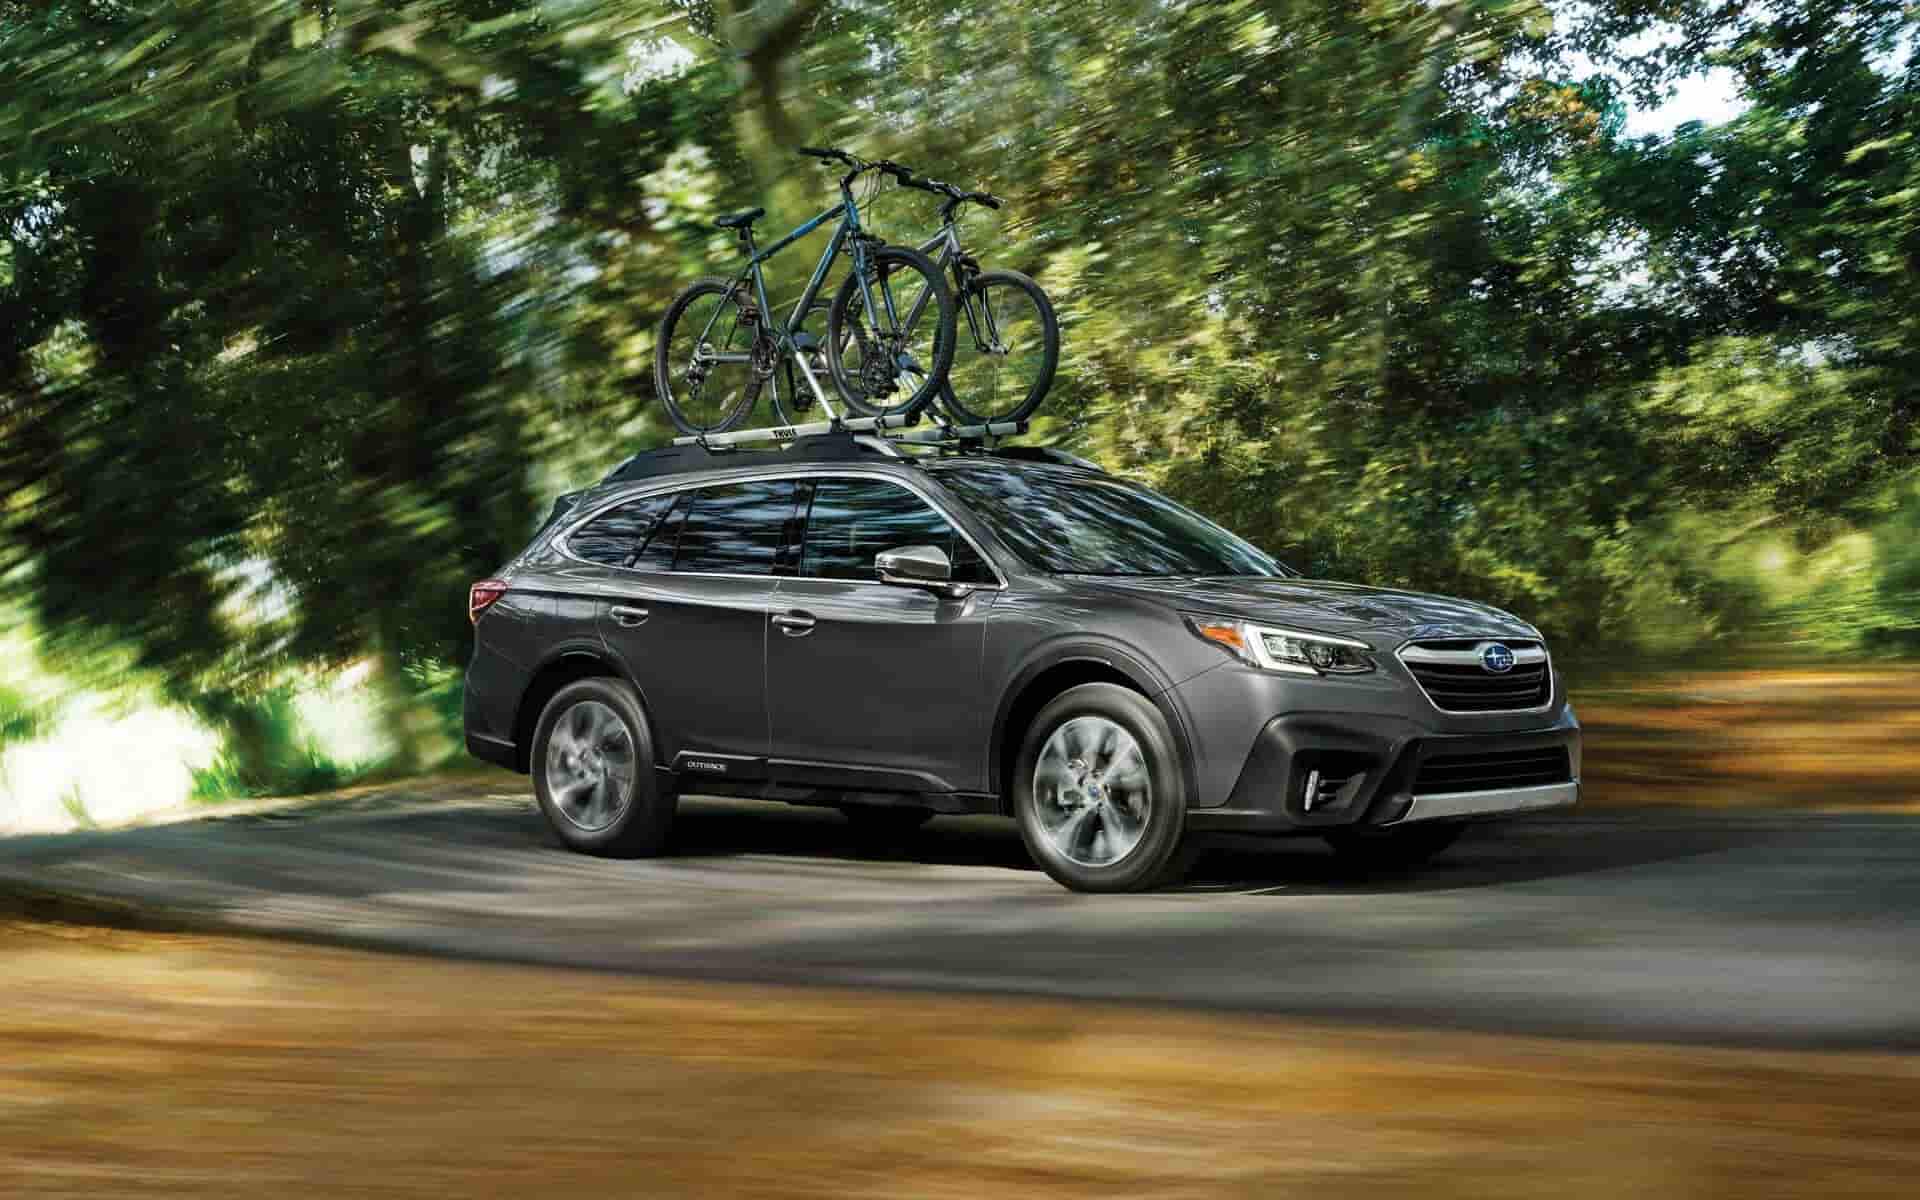 Lease a 2020 Subaru Outback near Lafayette CO